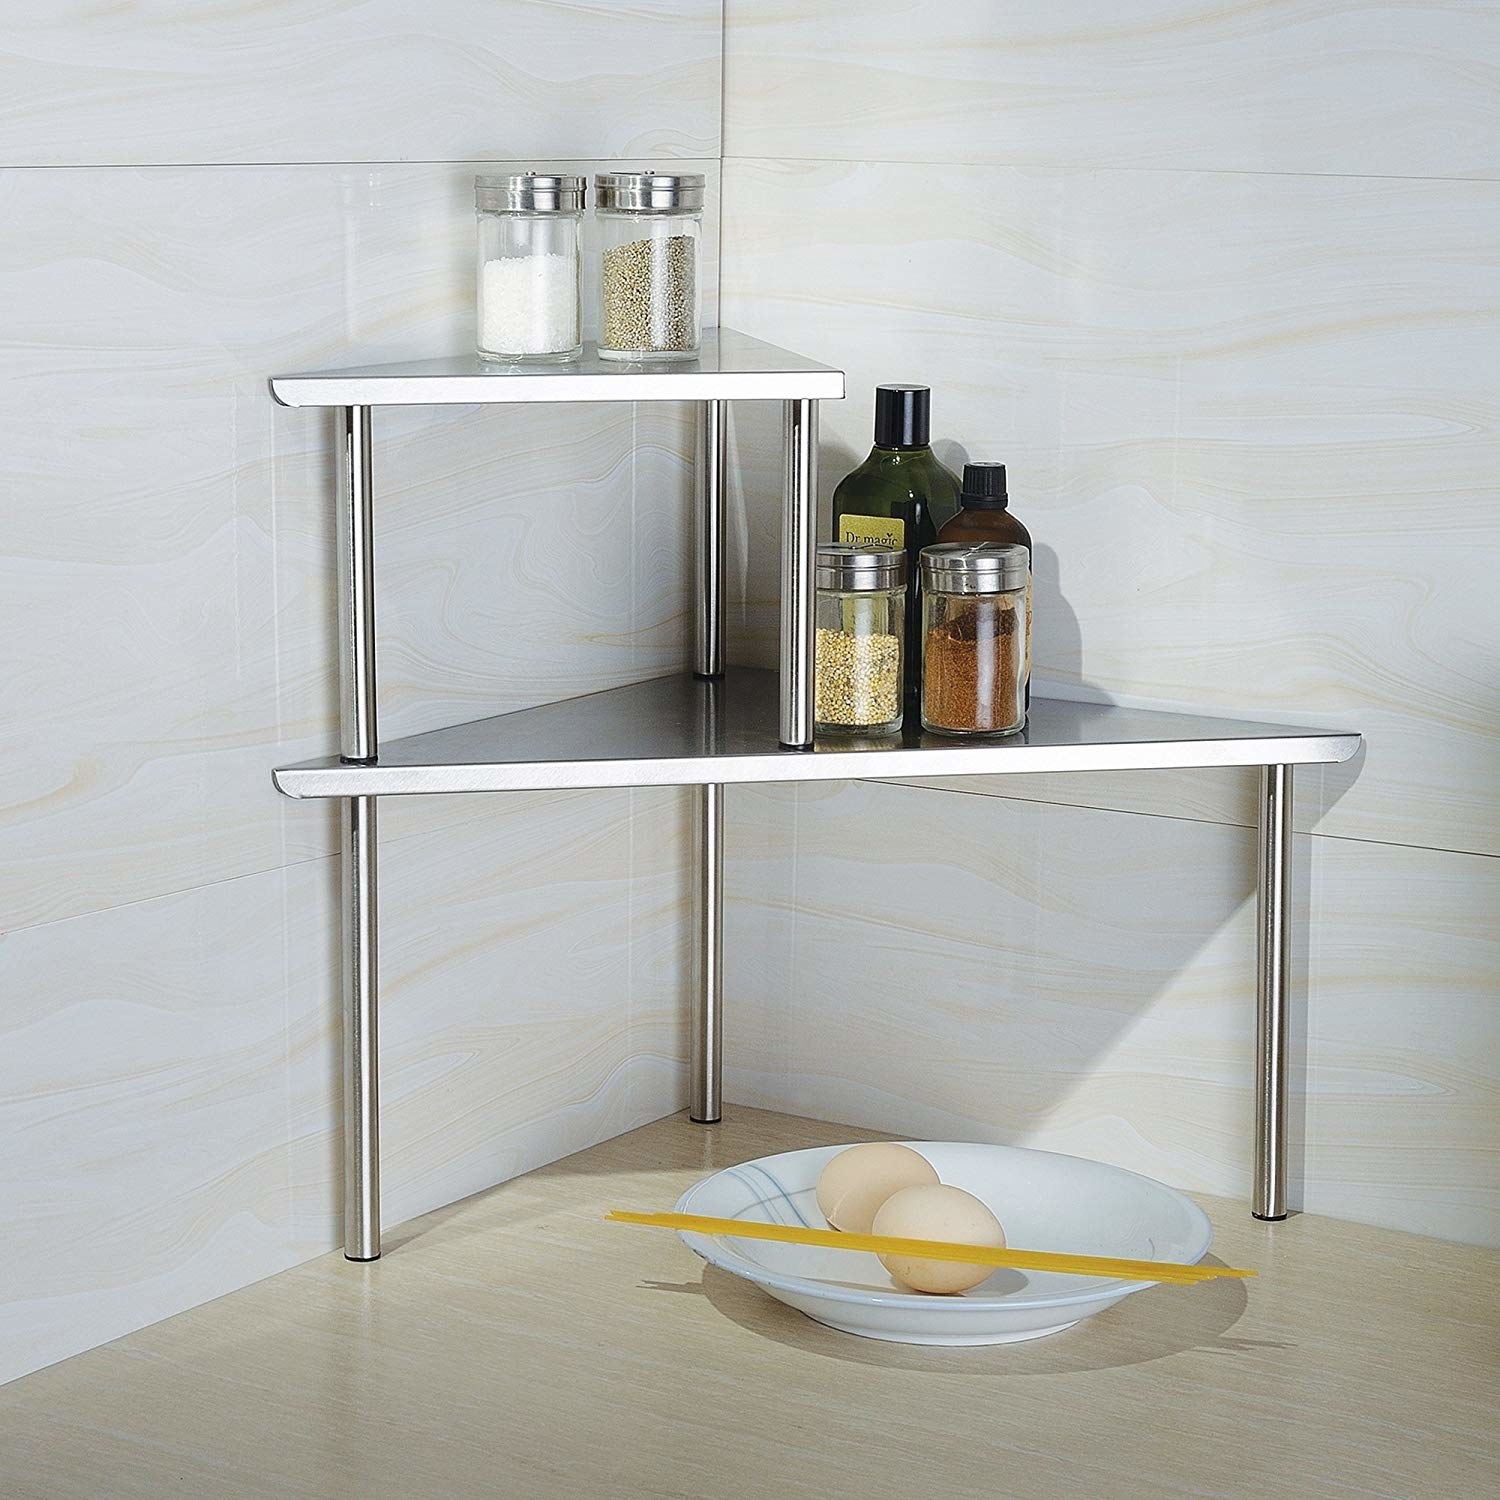 Two-tier storage shelf in corner of kitchen 